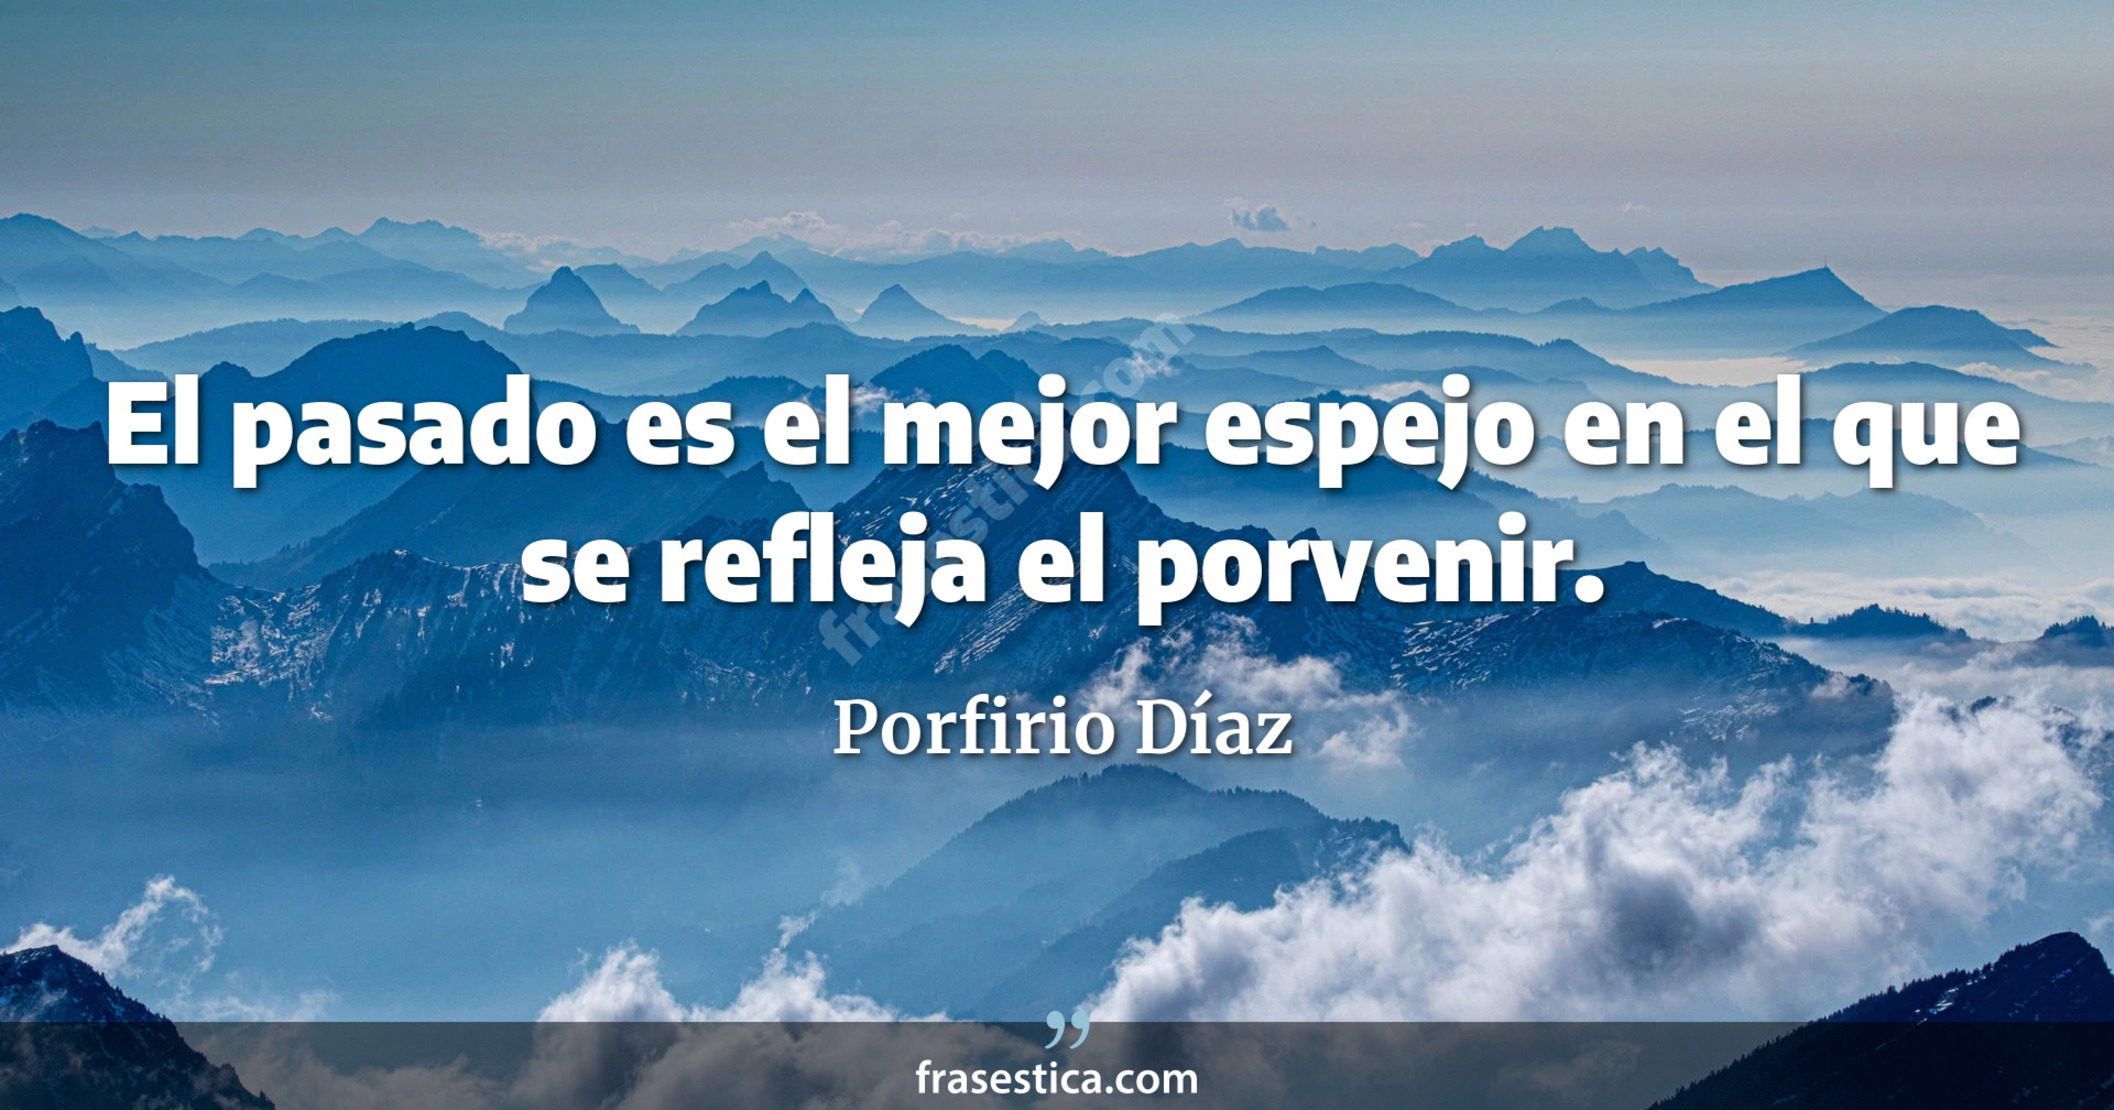 El pasado es el mejor espejo en el que se refleja el porvenir. - Porfirio Díaz